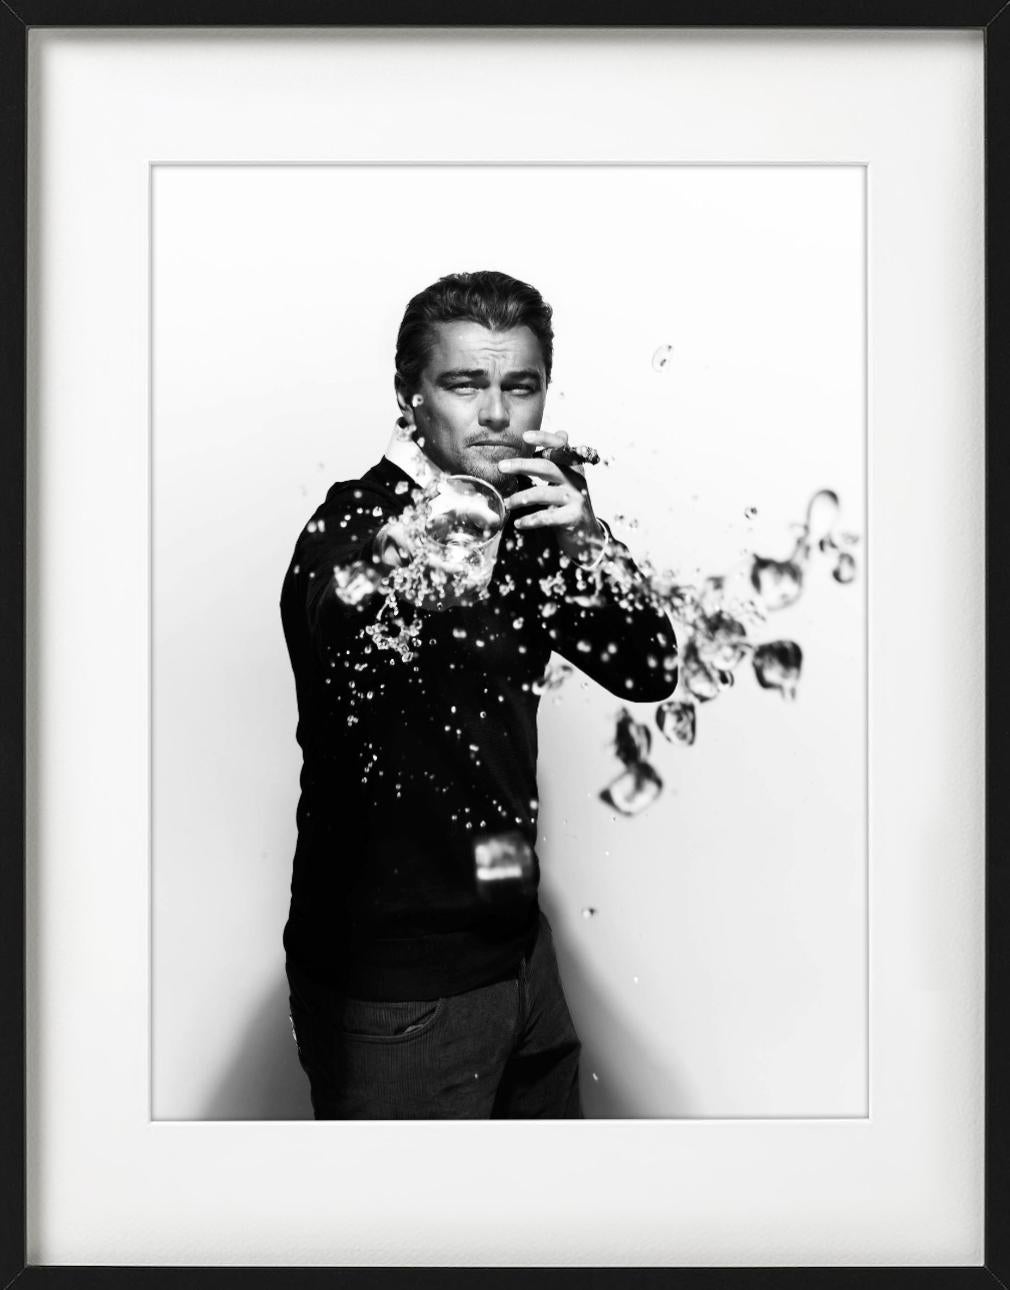 Leonardo DiCaprio-Trümmern – Porträt, das Trinken von Trinkgläsern, Kunstfotografie, 2010 (Grau), Black and White Photograph, von Nigel Parry